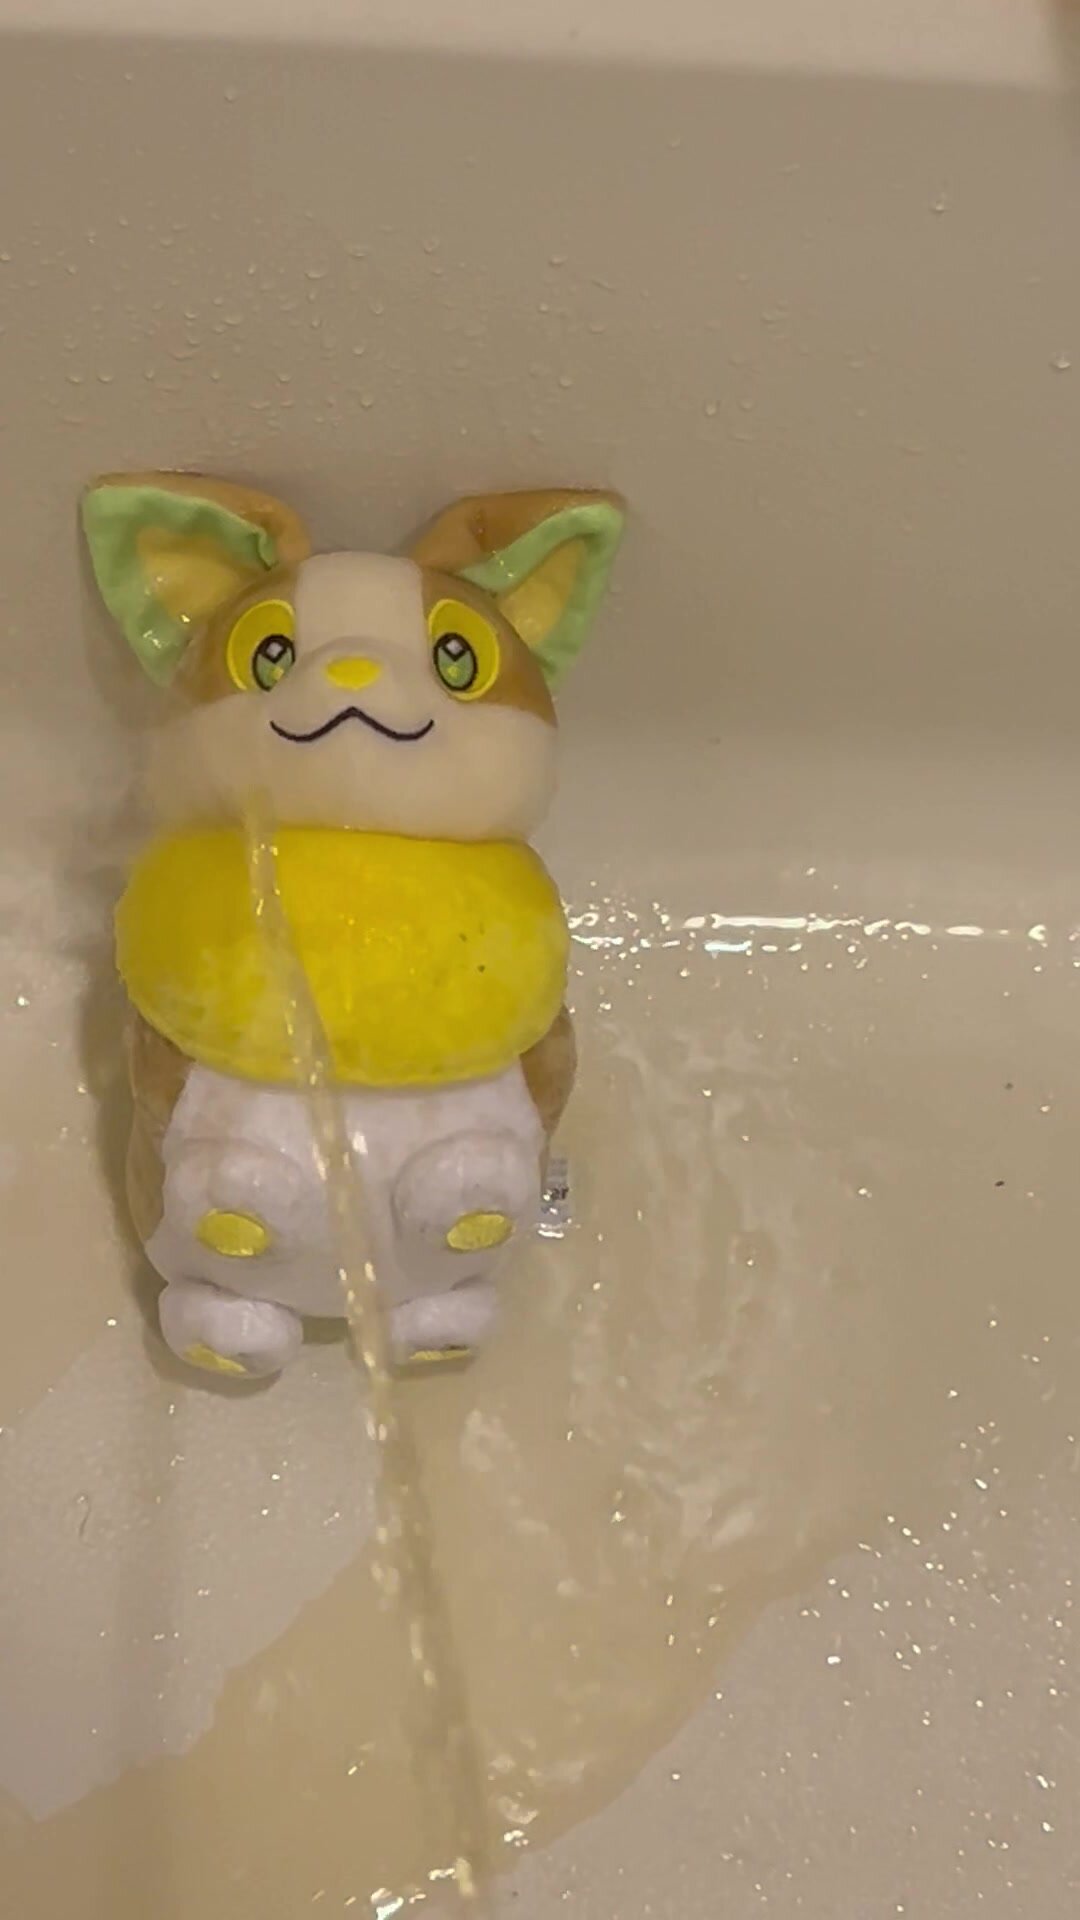 A Random Pokemon Gets A Golden Shower!